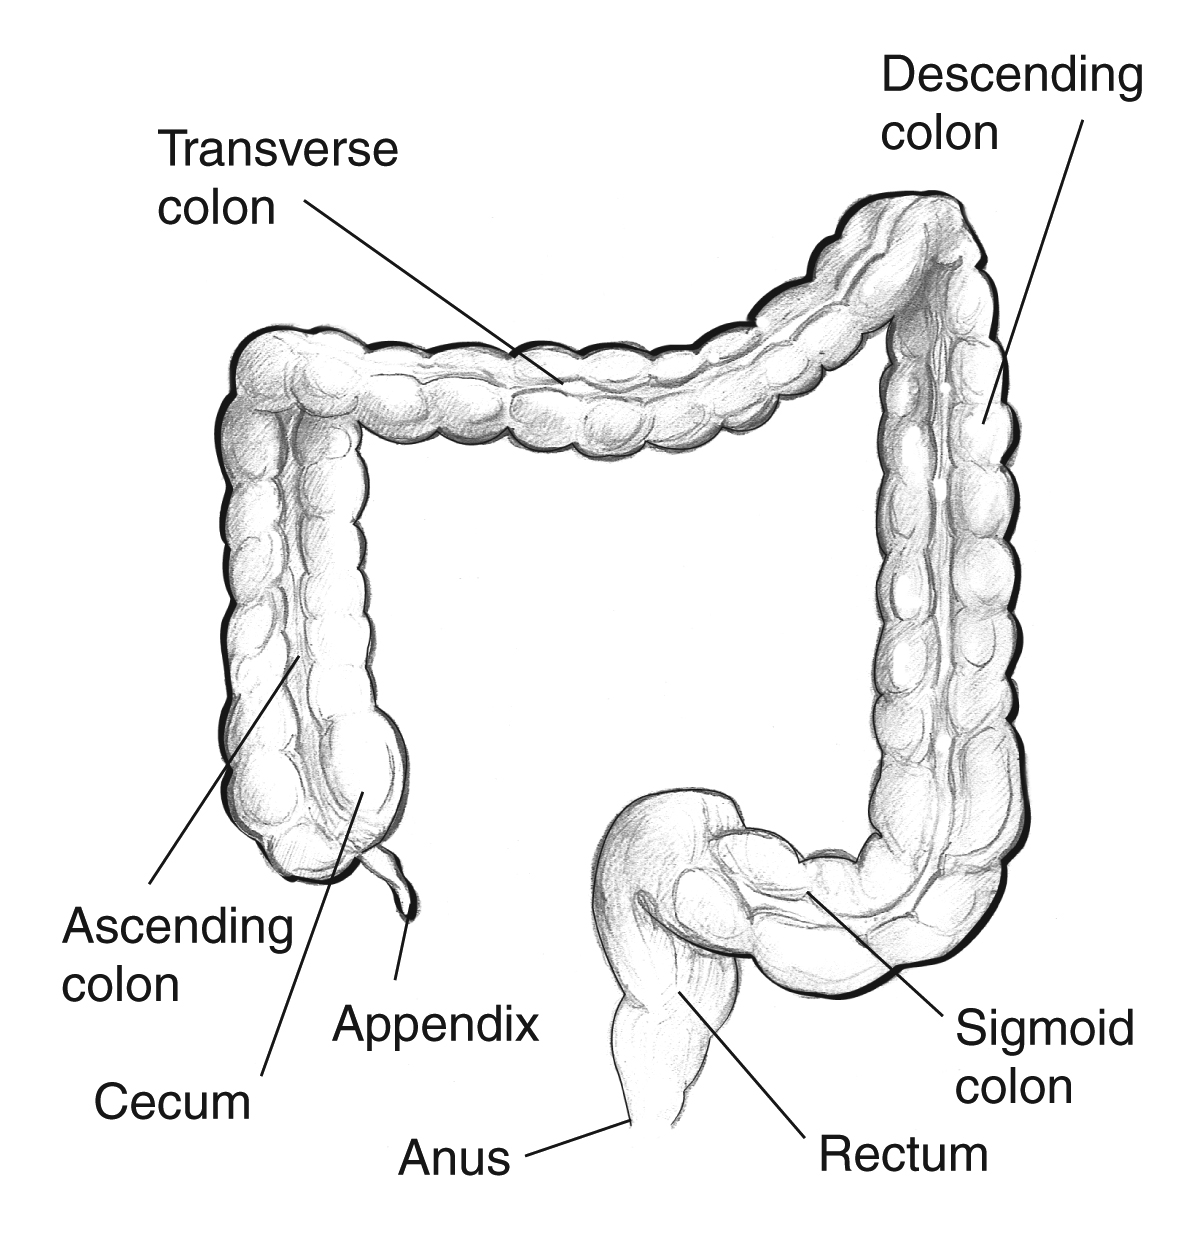 large intestine diagram